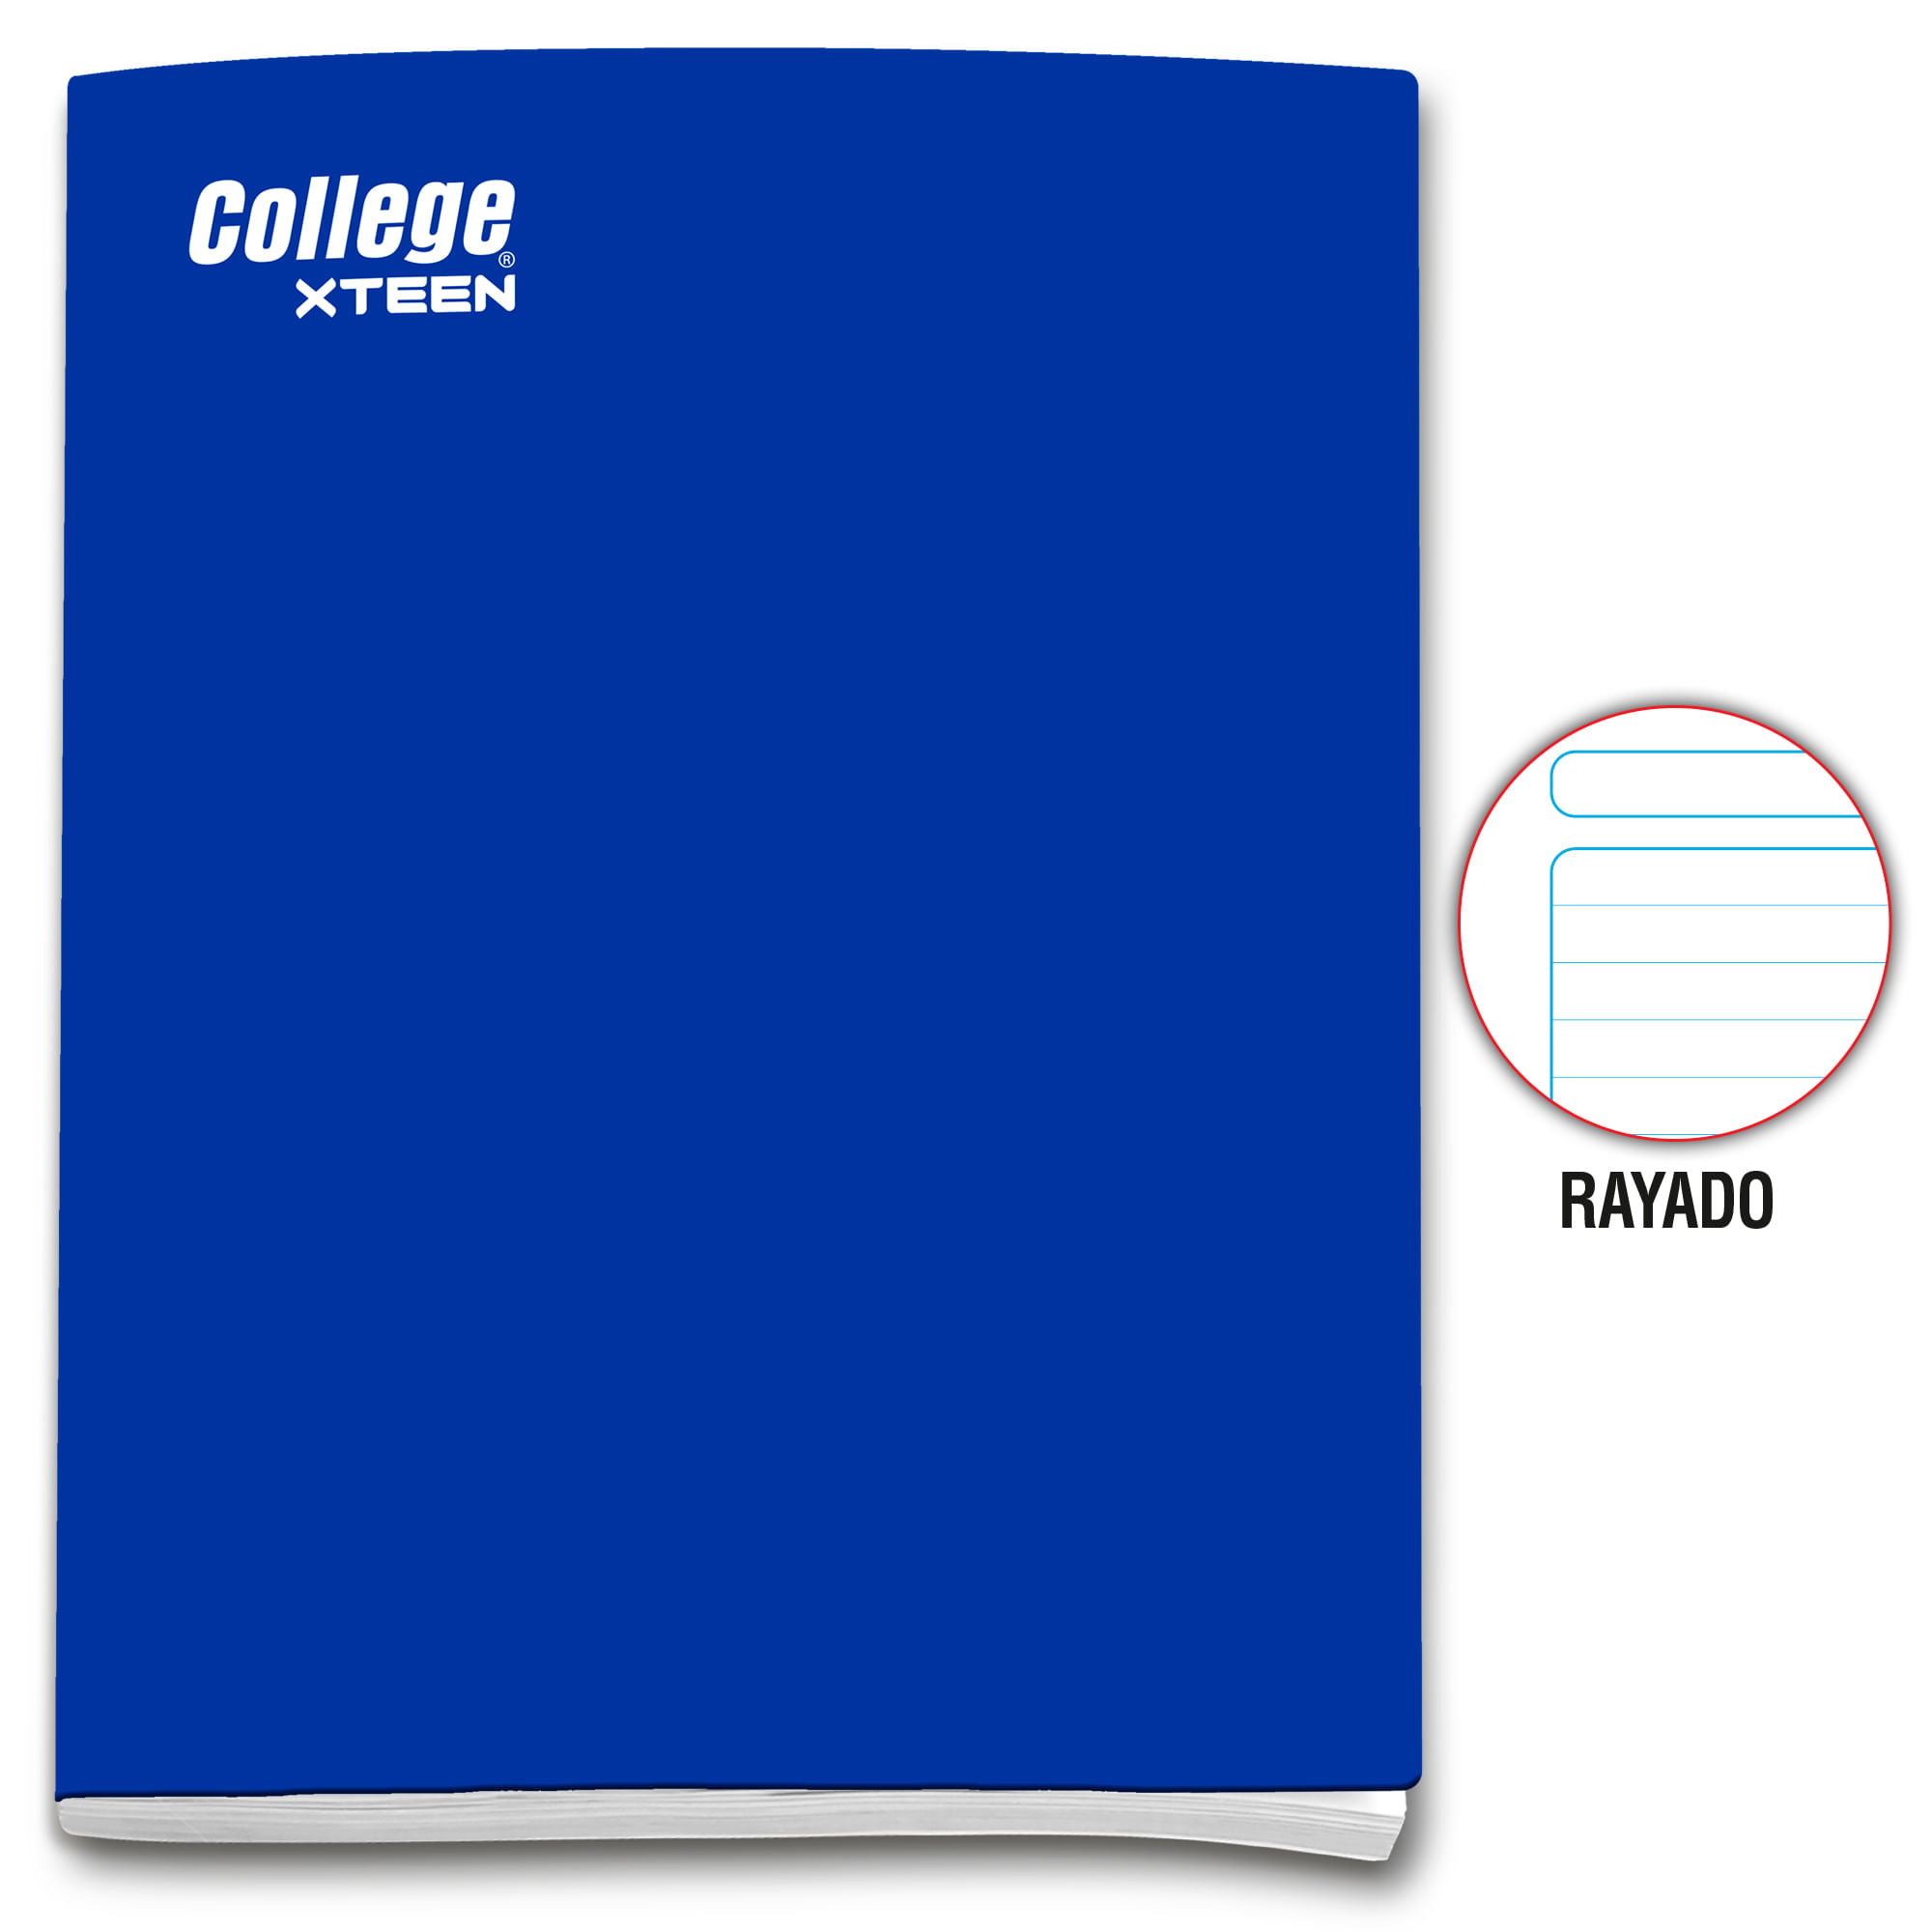 Cuaderno Deluxe Grapados COLLEGE Rayado 80hj Xteen (Modelos Aleatorios)